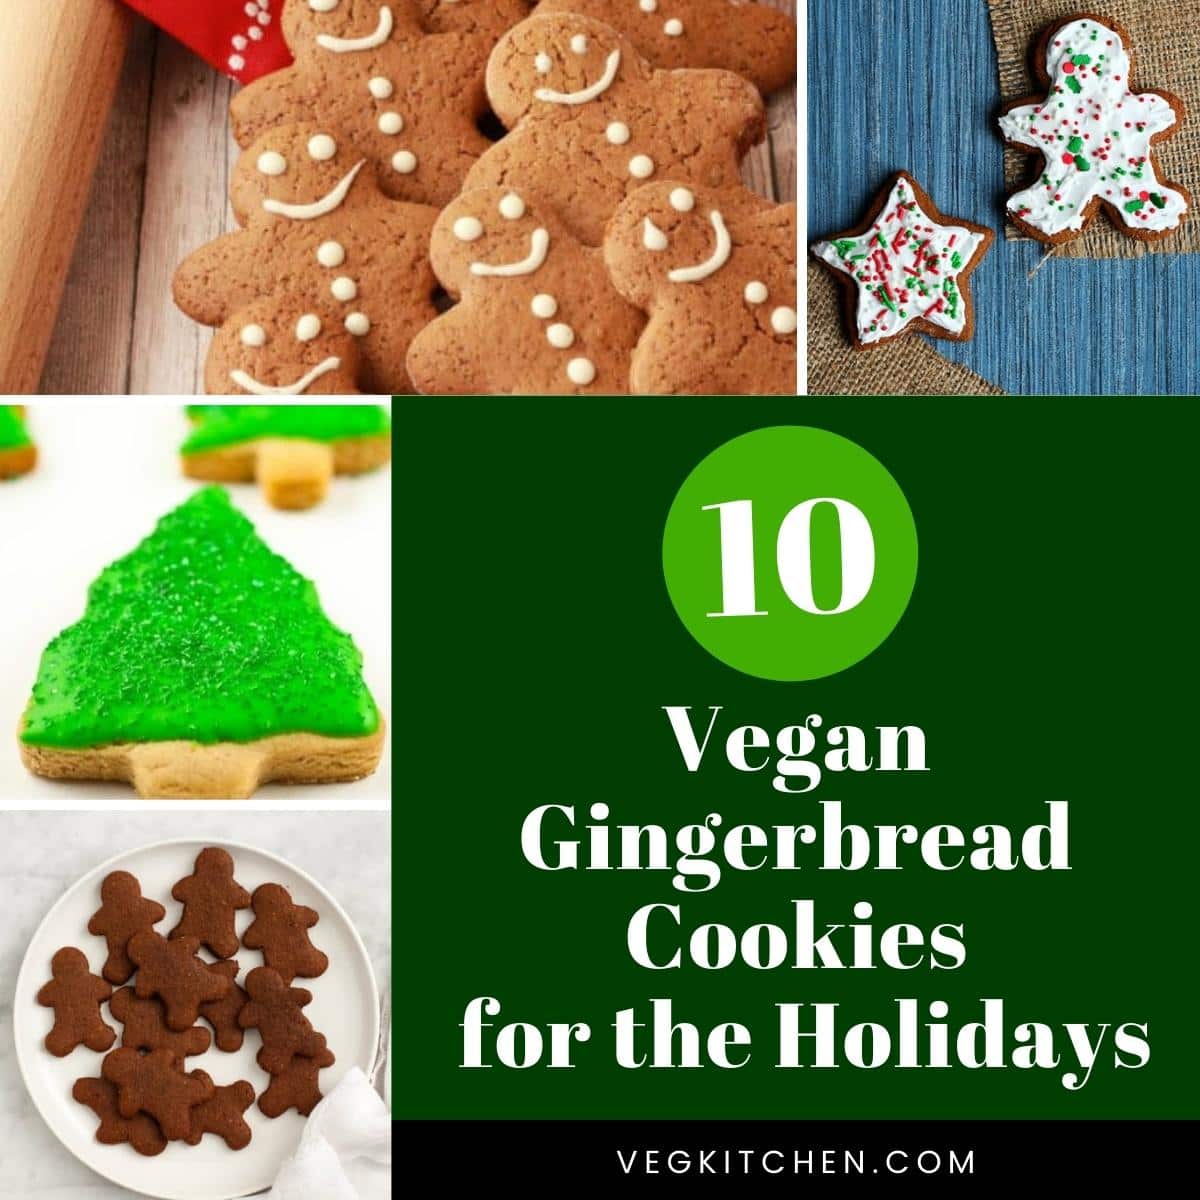 recipes for vegan gingerbread cookies